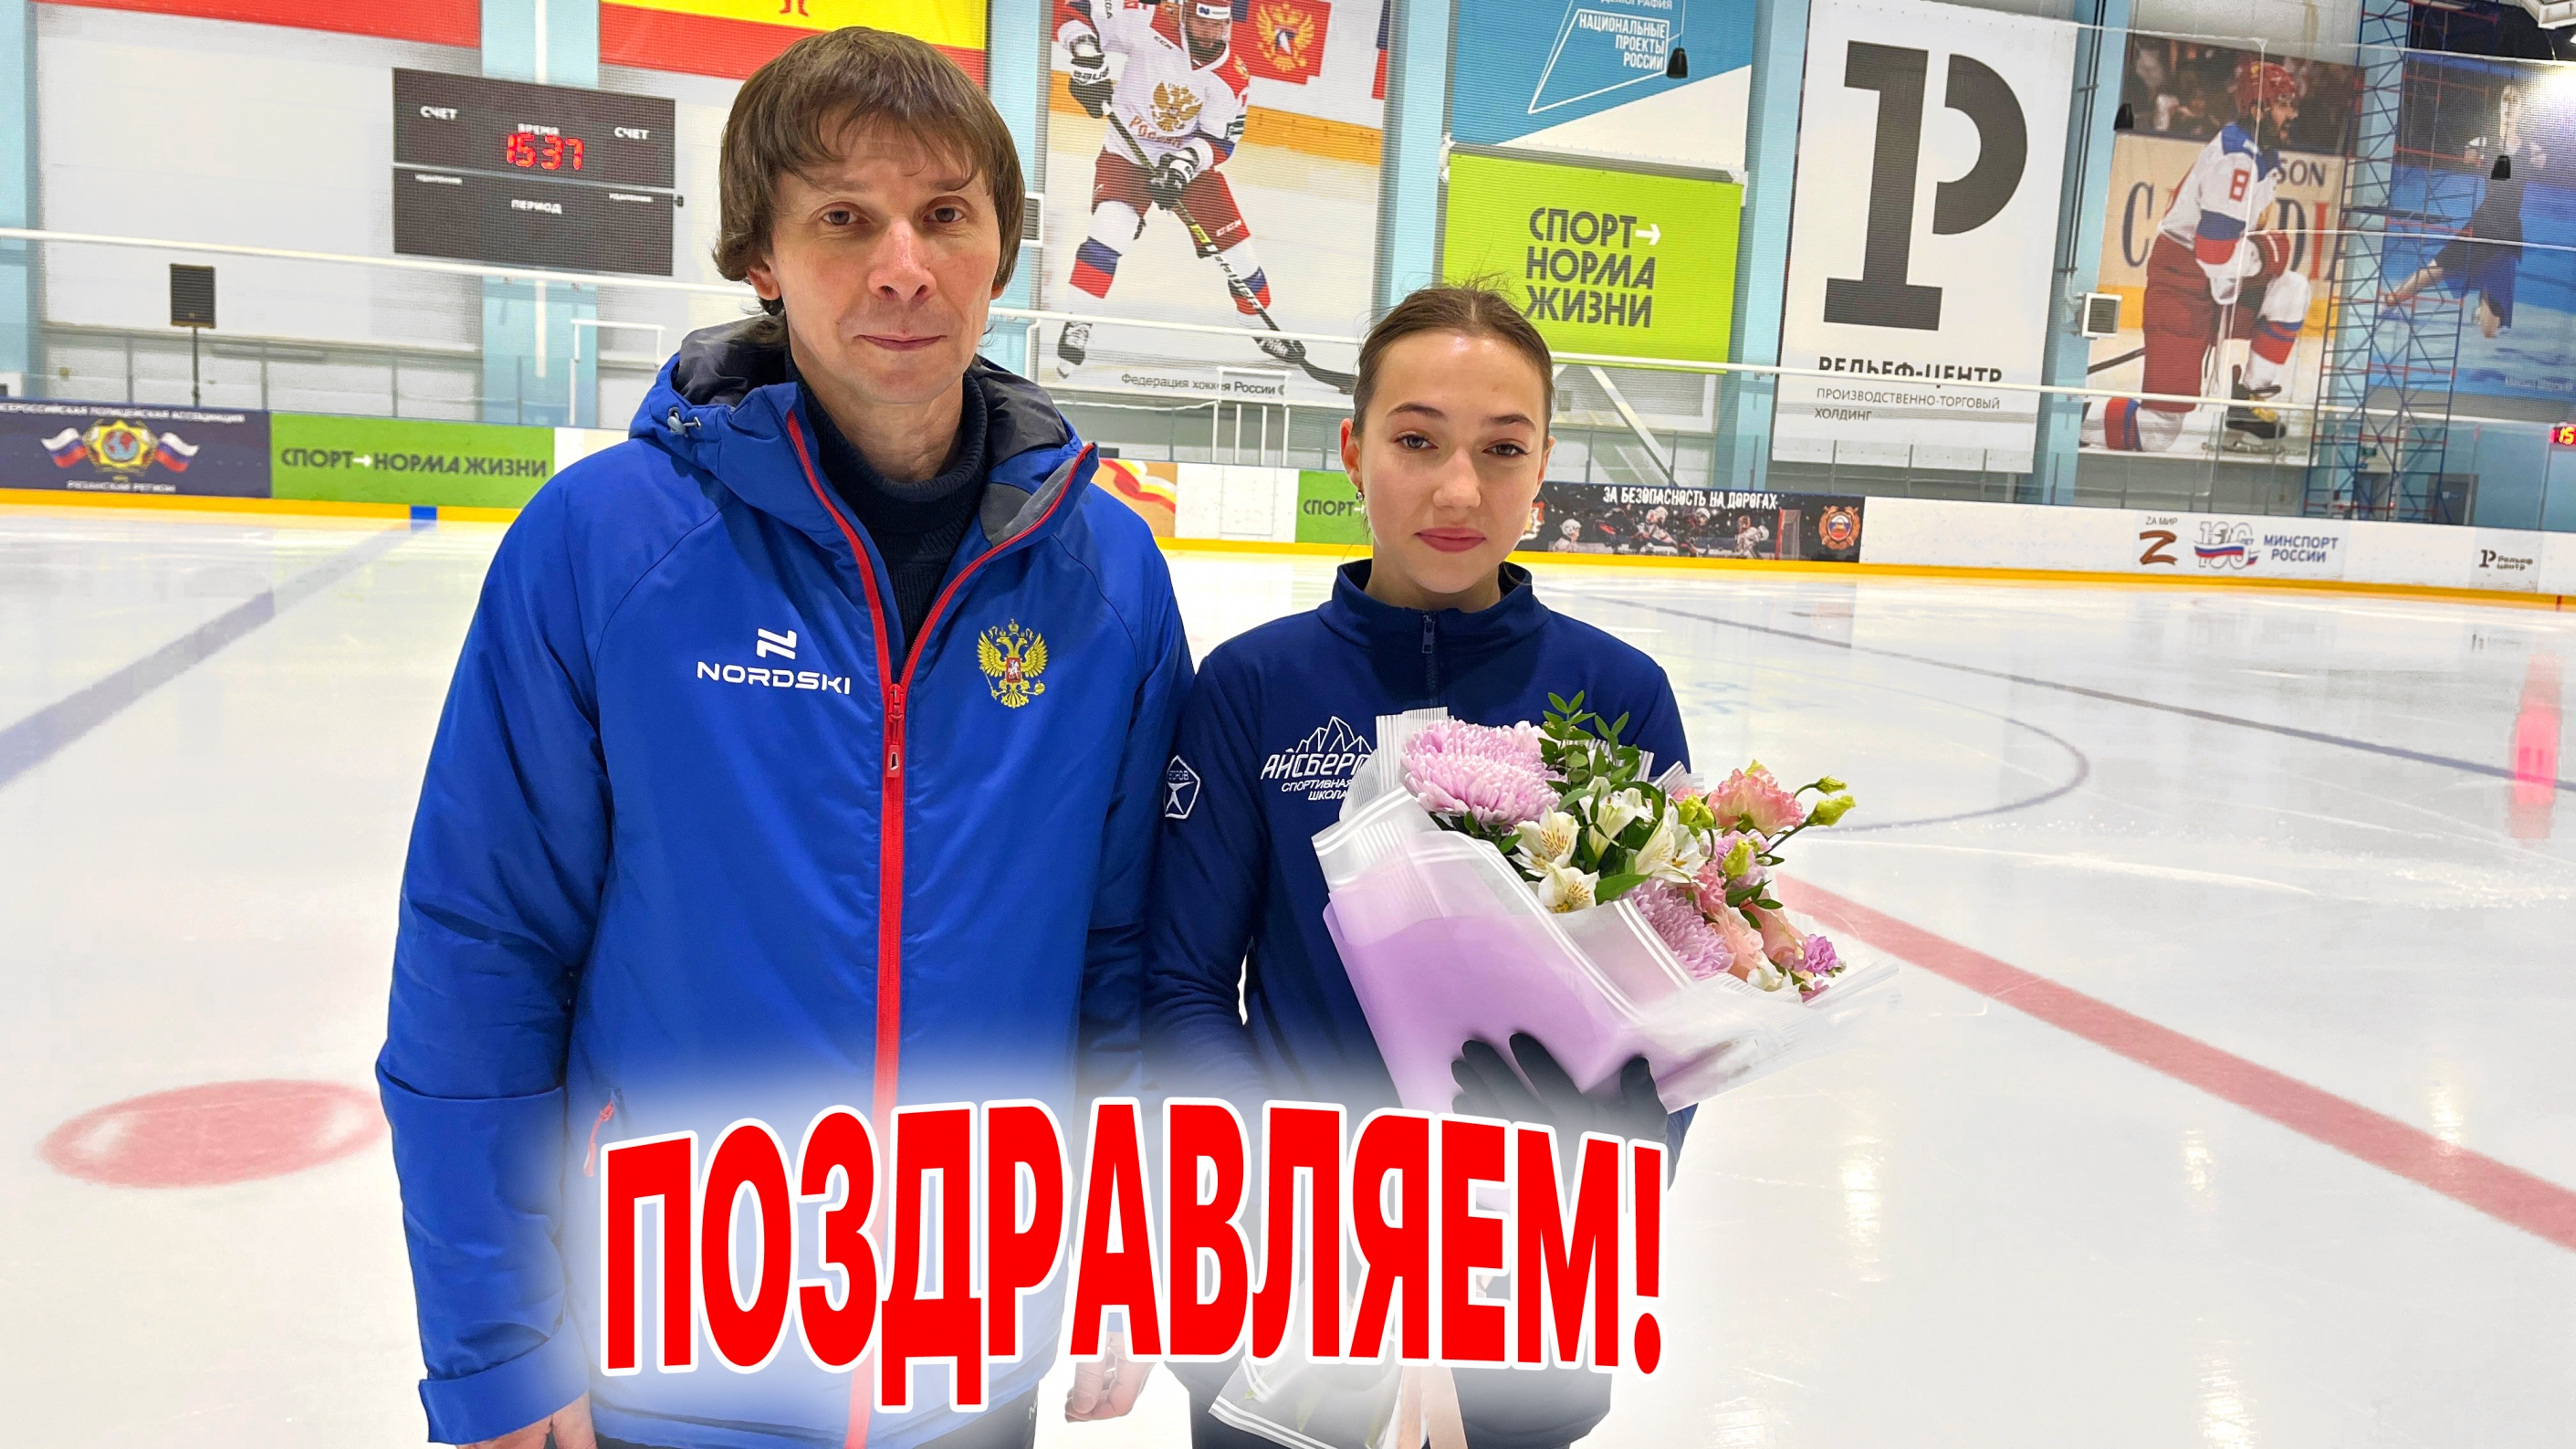 Поздравляем Ангелину Козыреву (тренер Егоров А.В.) с включением в состав одаренных детей, добившихся высоких результатов в спорте!